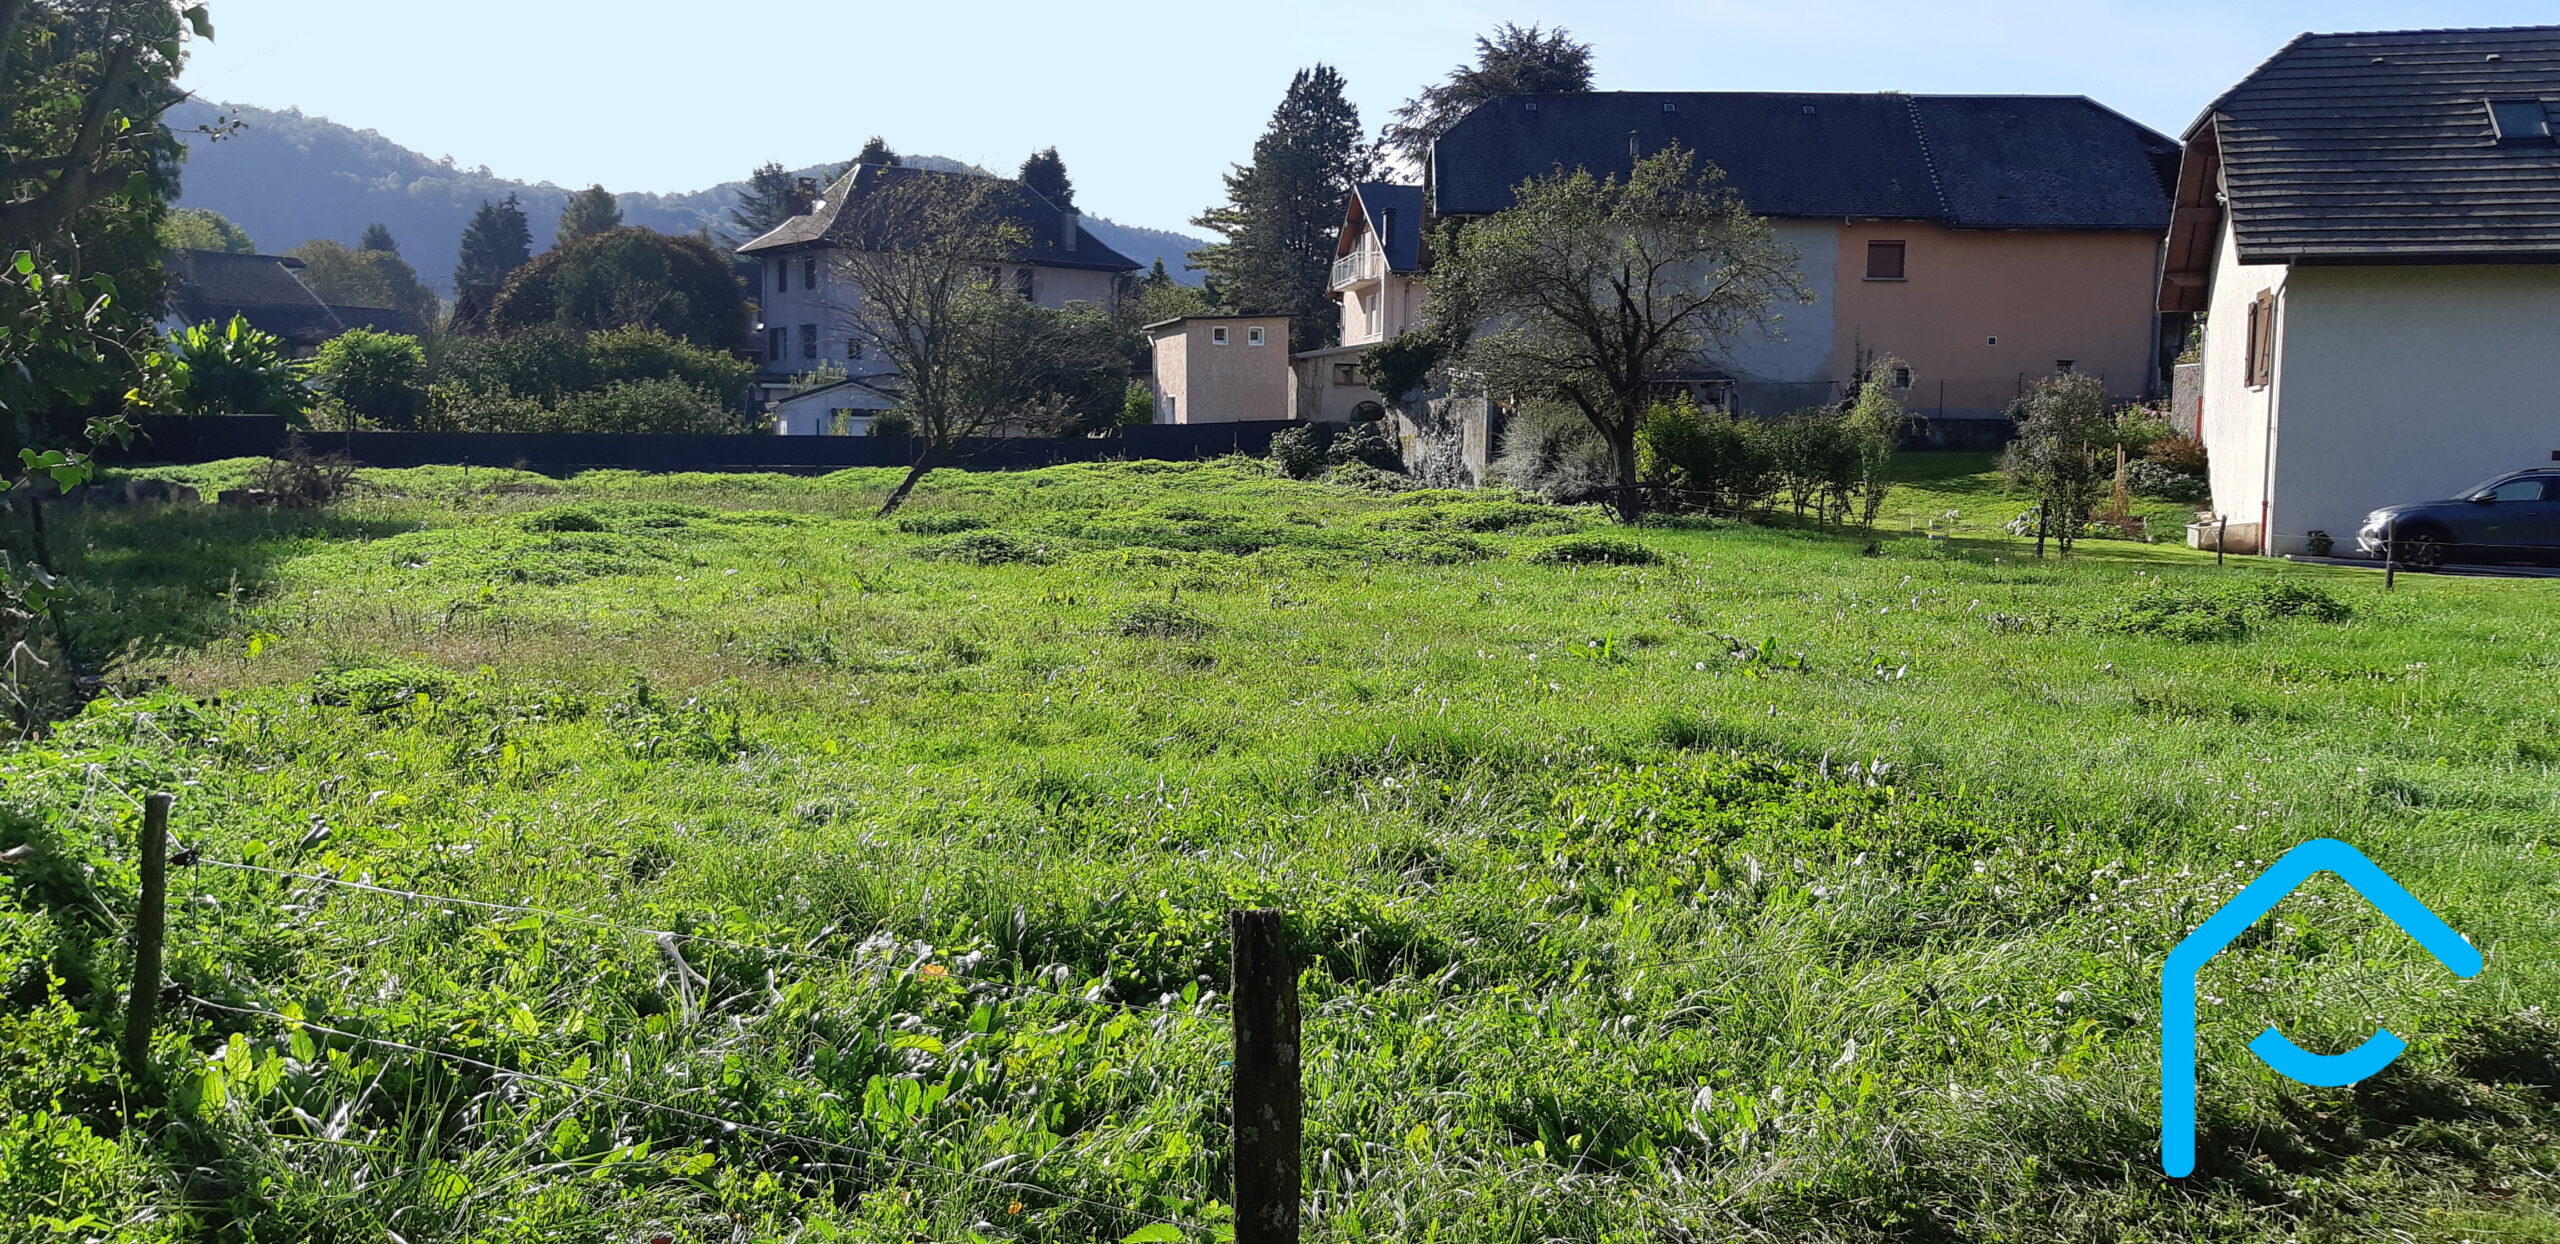 A vendre Savoie Sonnaz Terrain constructible plat résidentiel vue 2